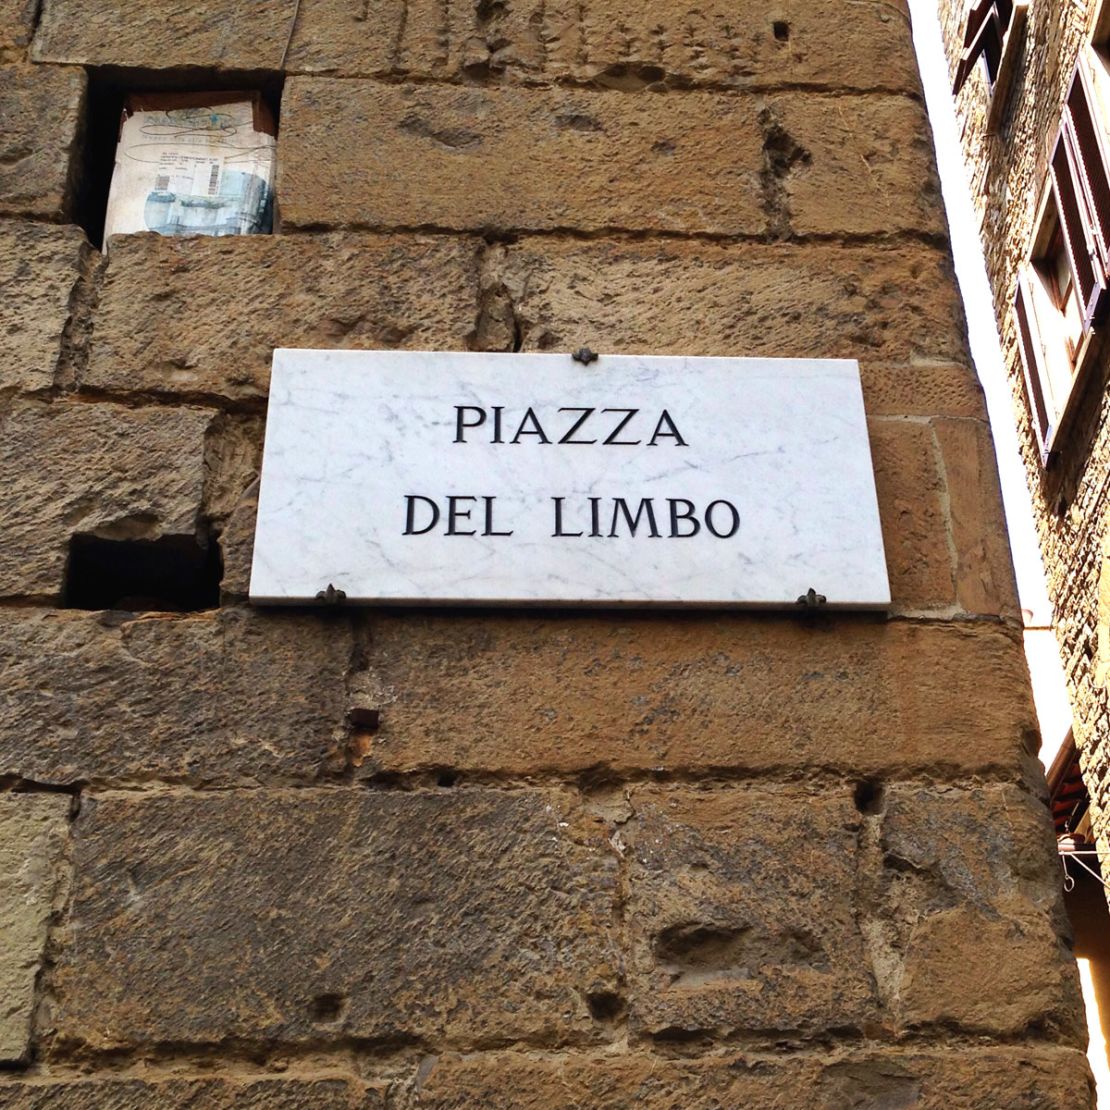 Piazza del Limbo: offbeat destination.